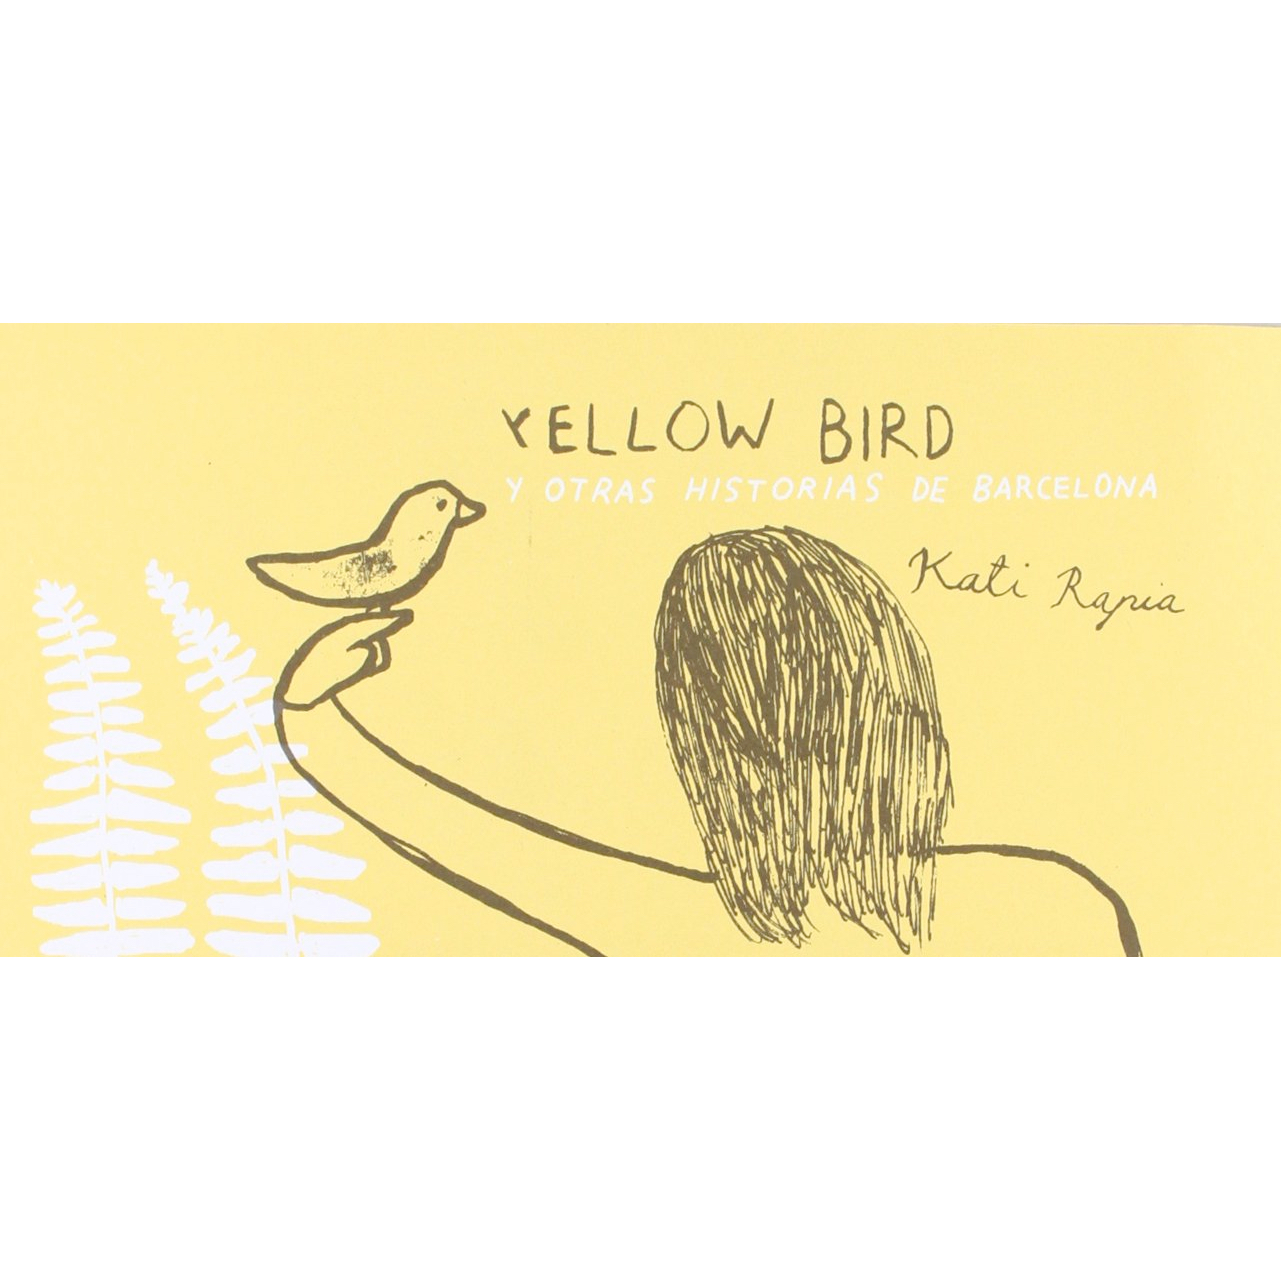 "Yellow Bird y otras historias de Barcelona" de Kati Rapia